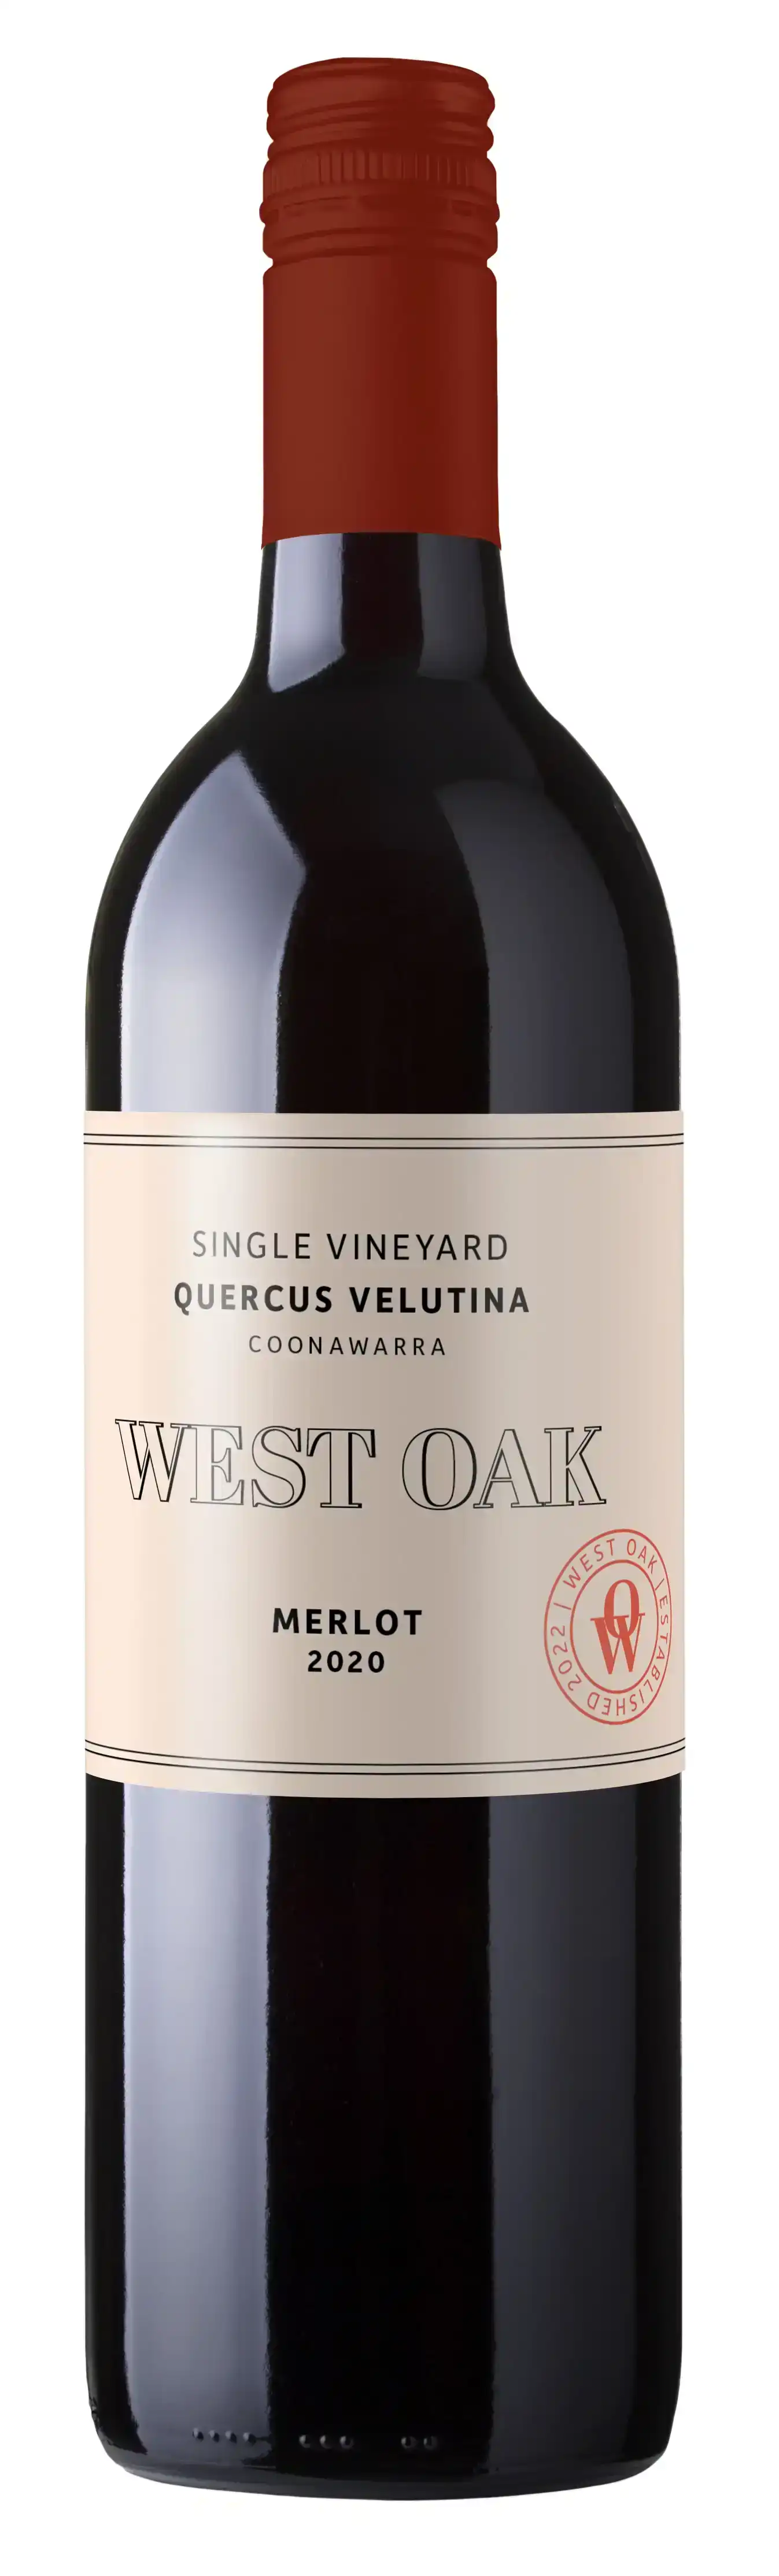 12 pack - West Oak - Merlot